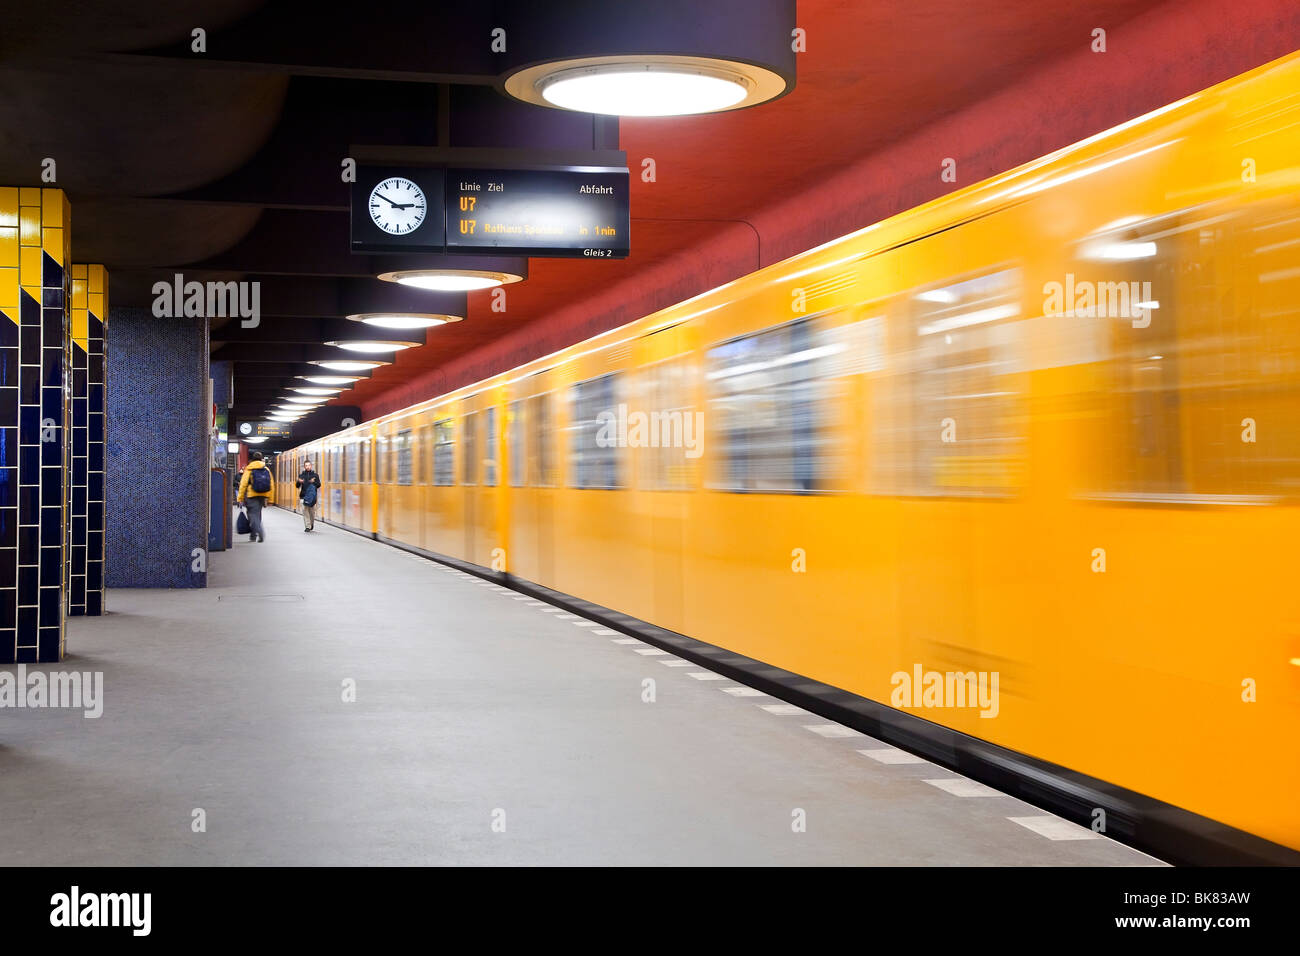 Europa, Deutschland, Berlin, moderne u-Bahn - Zug in den Bahnhof Ziehen verschieben Stockfoto